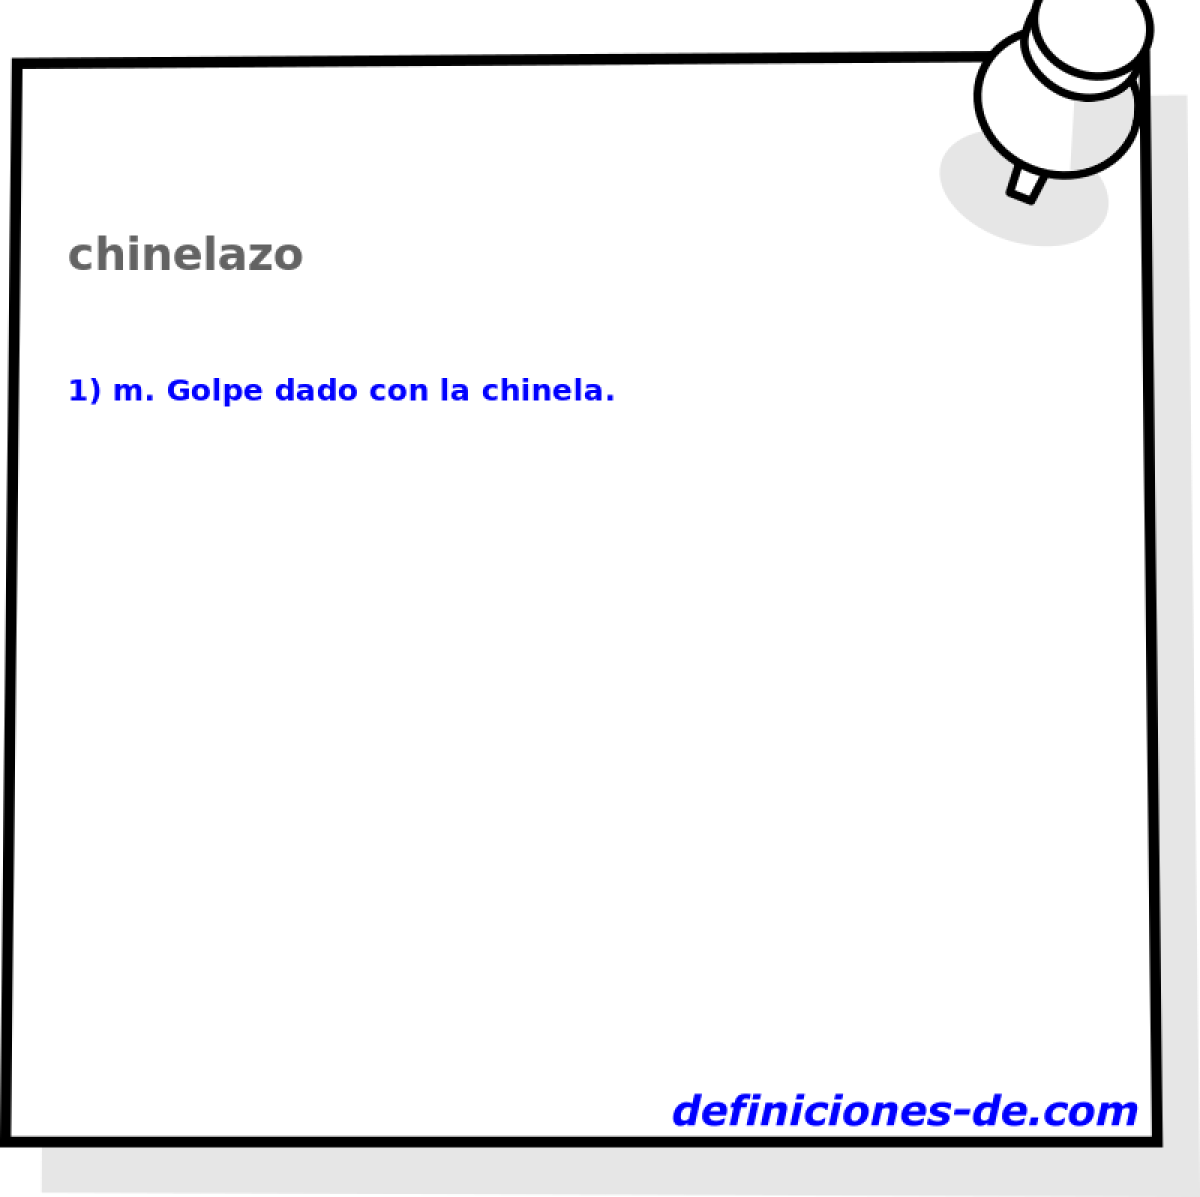 chinelazo 